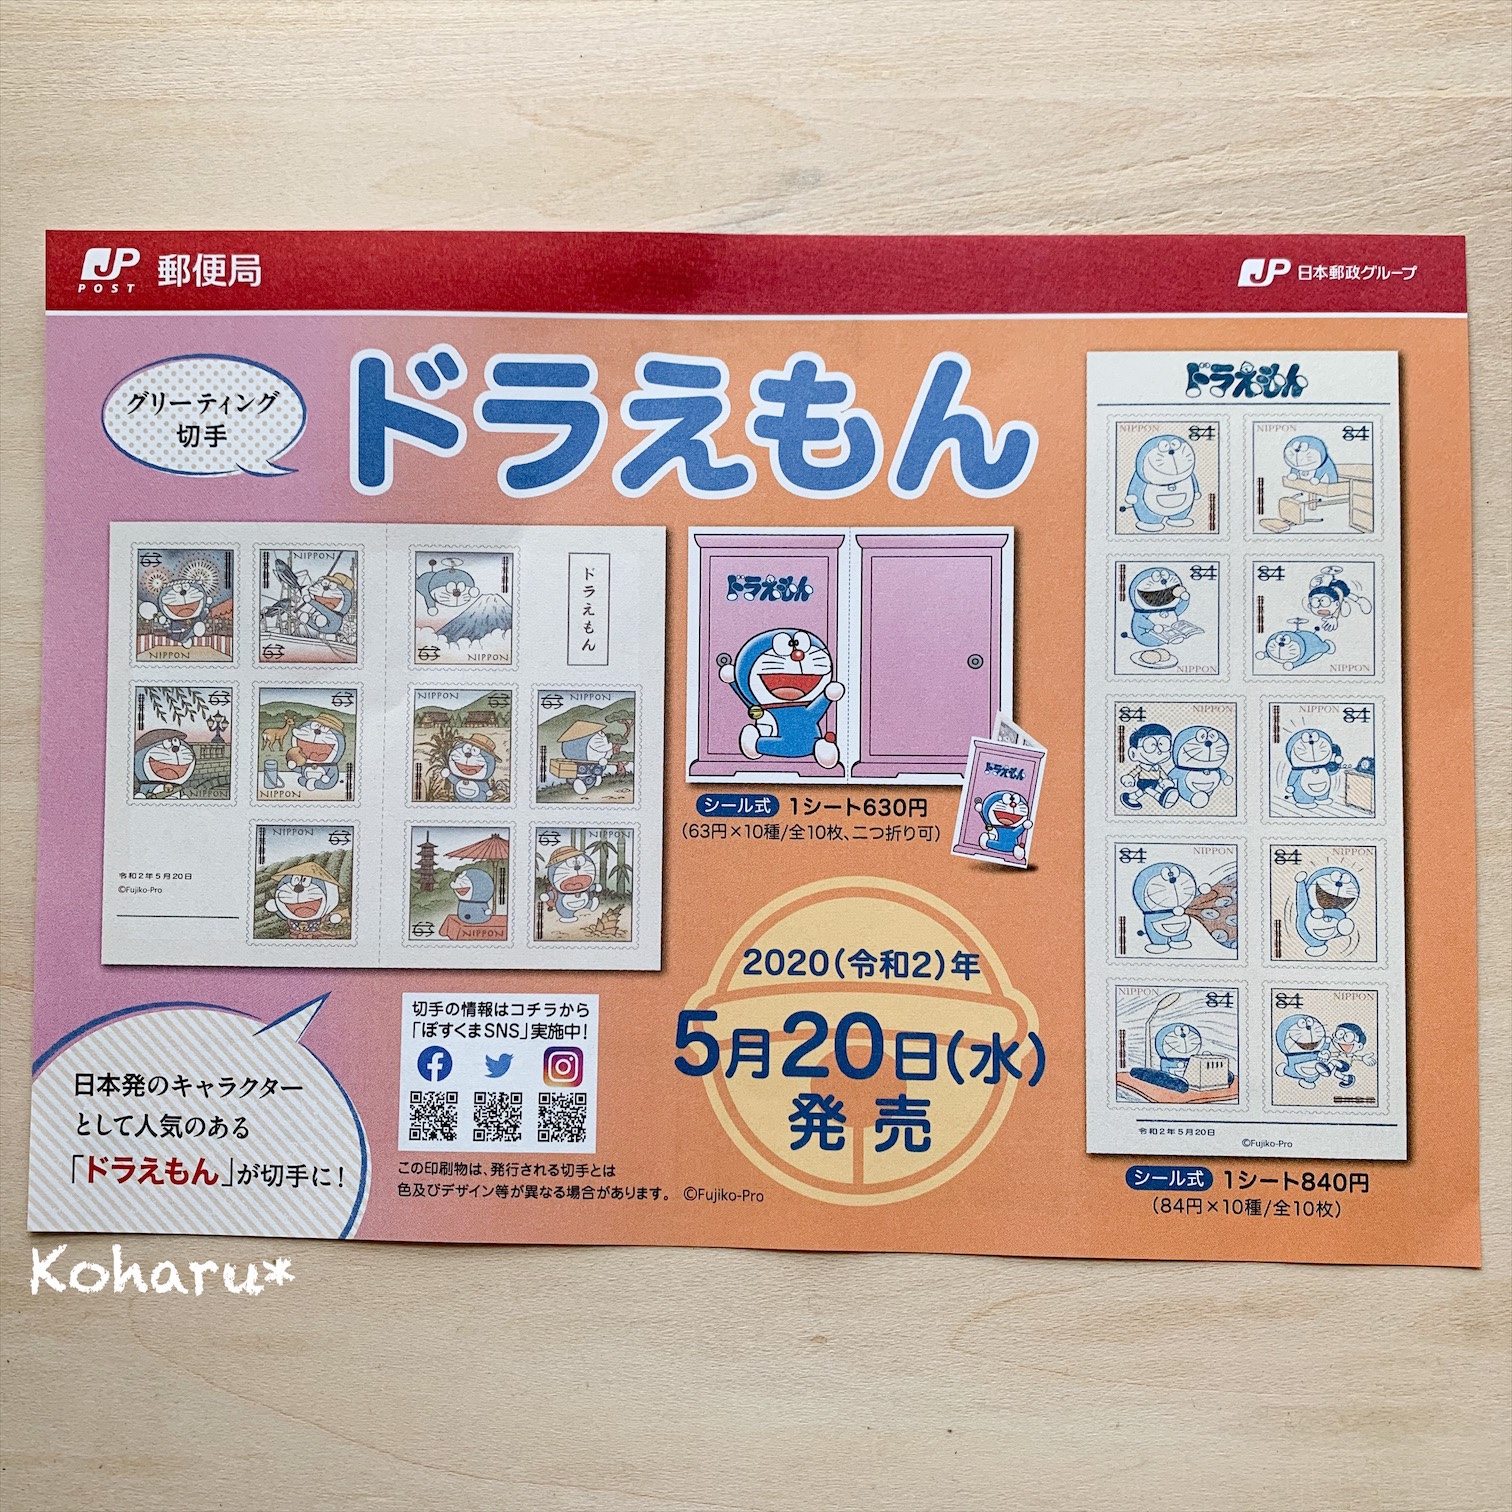 日本郵便からドラえもん切手が2種類発売開始 やさしいカラーの2シート 小春のきらきら日和